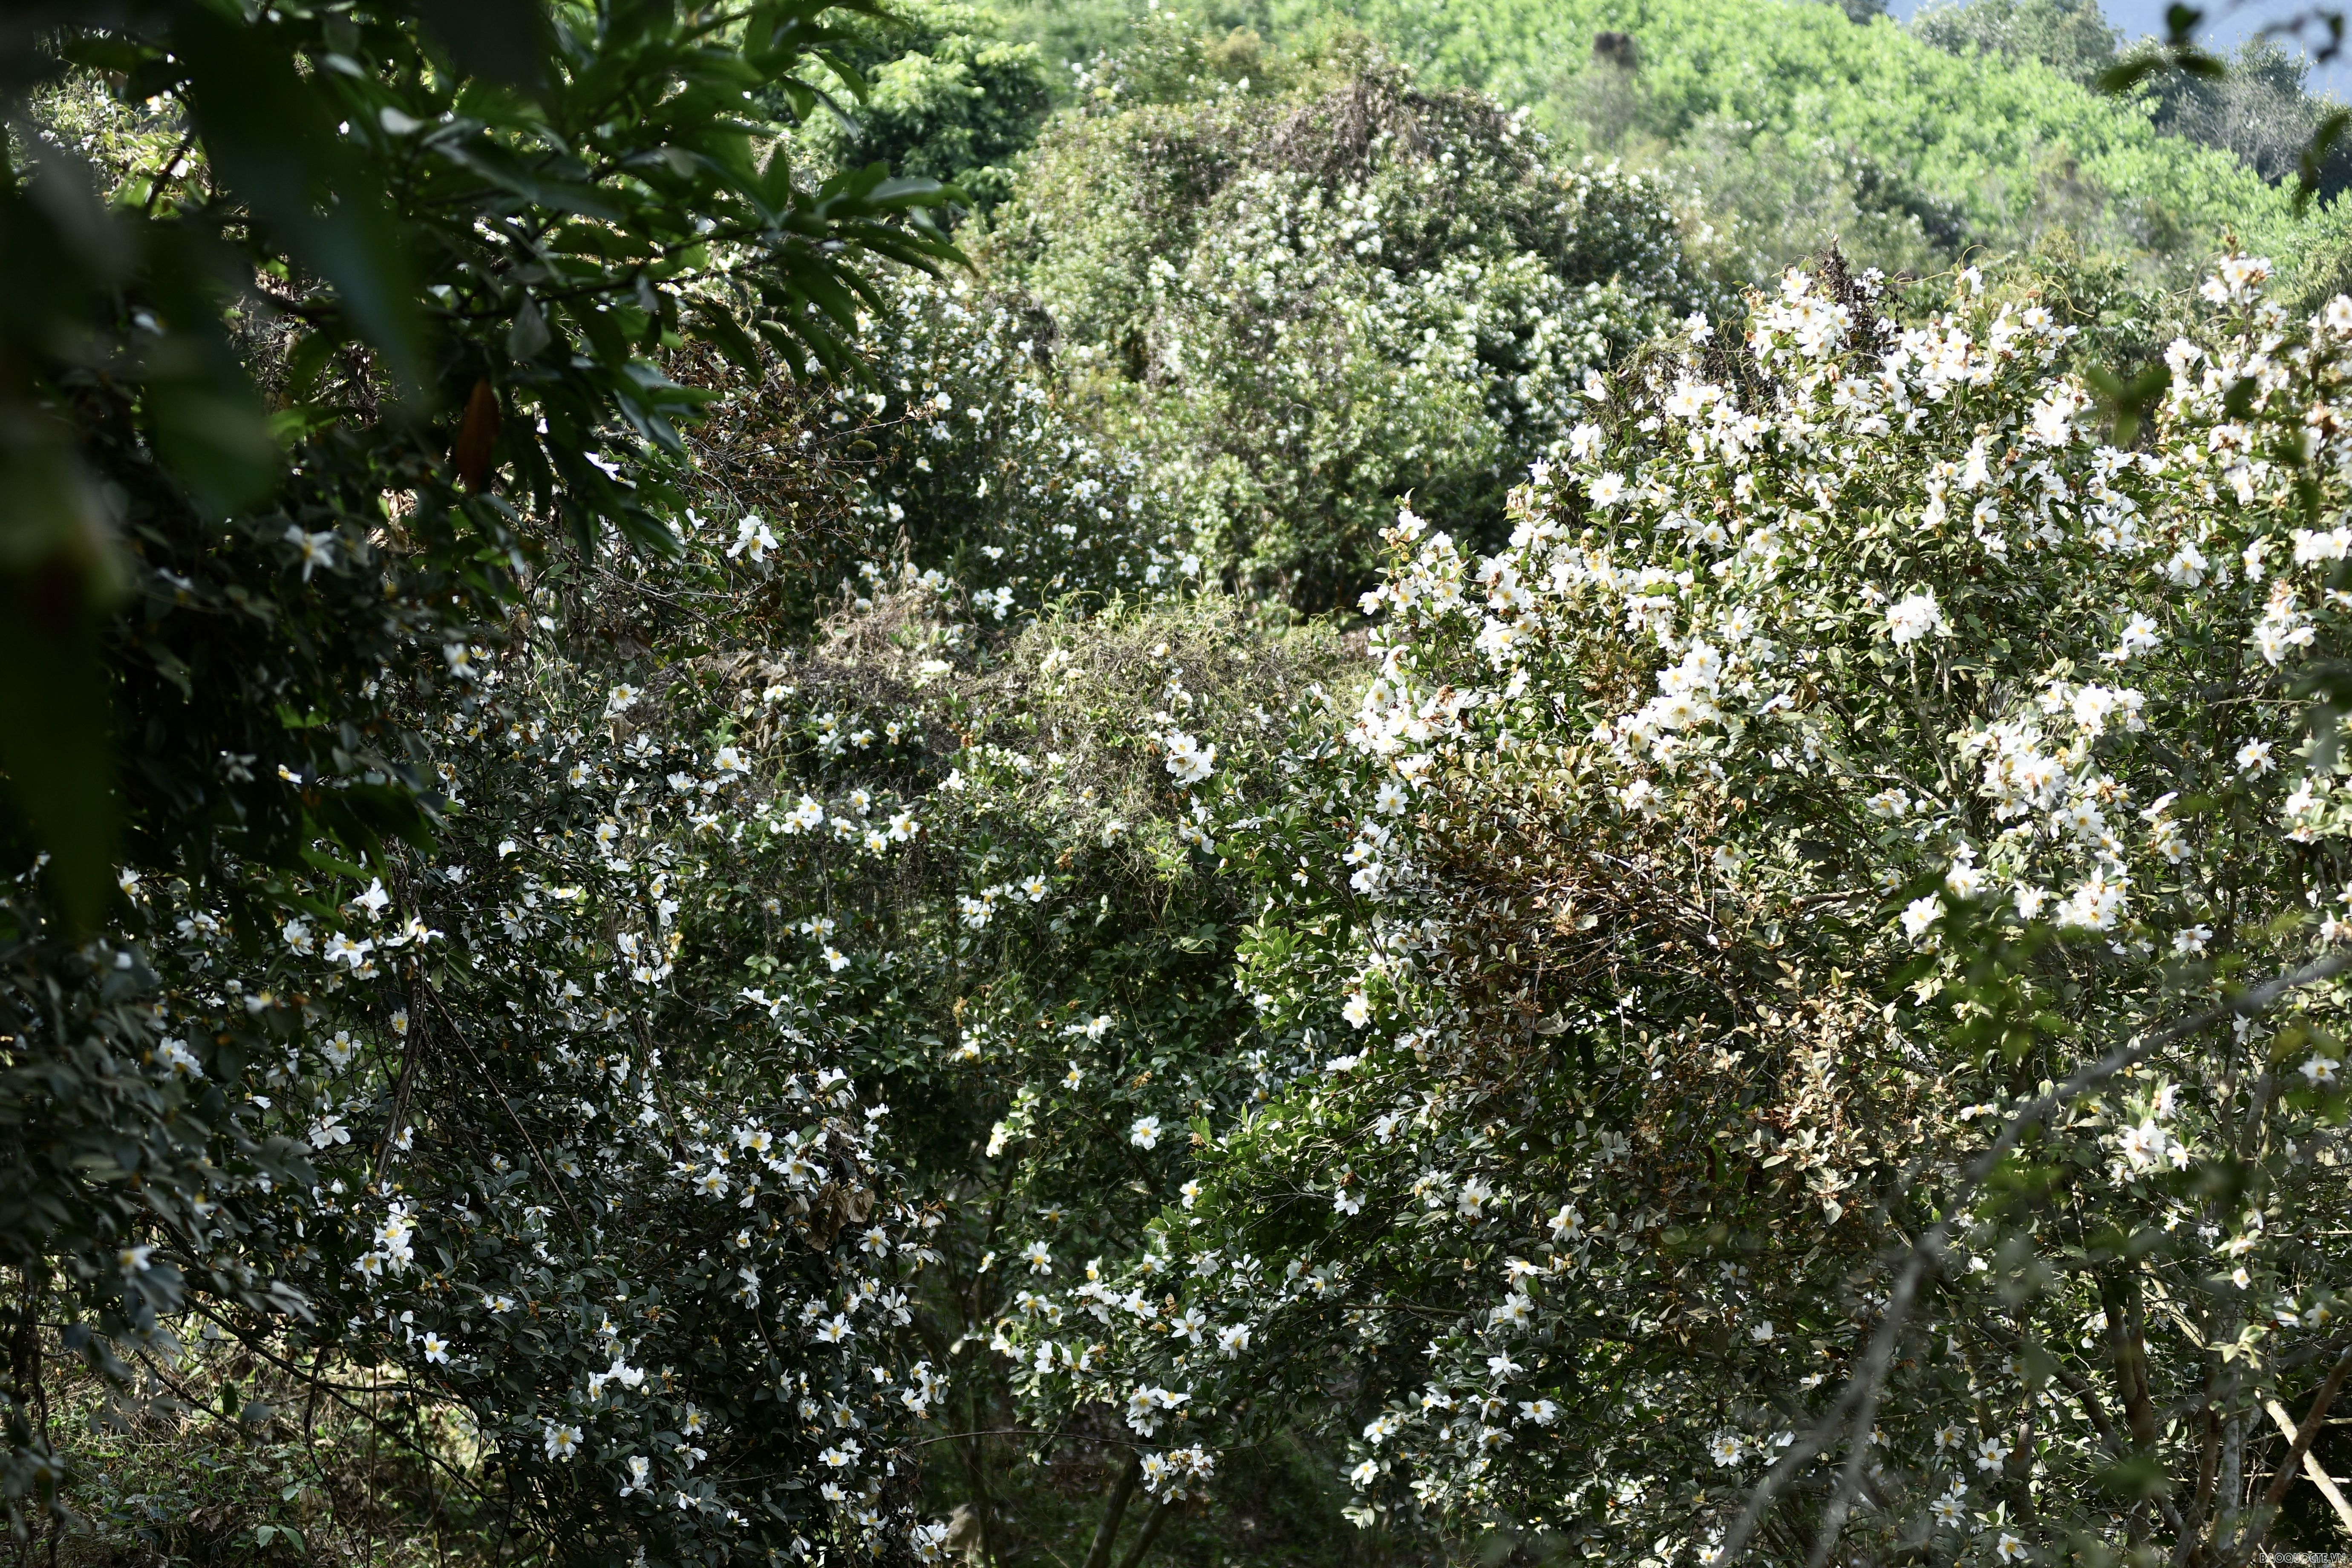 Du lịch Bình Liêu: Ngắm rừng hoa sở phủ sắc trắng tinh khôi